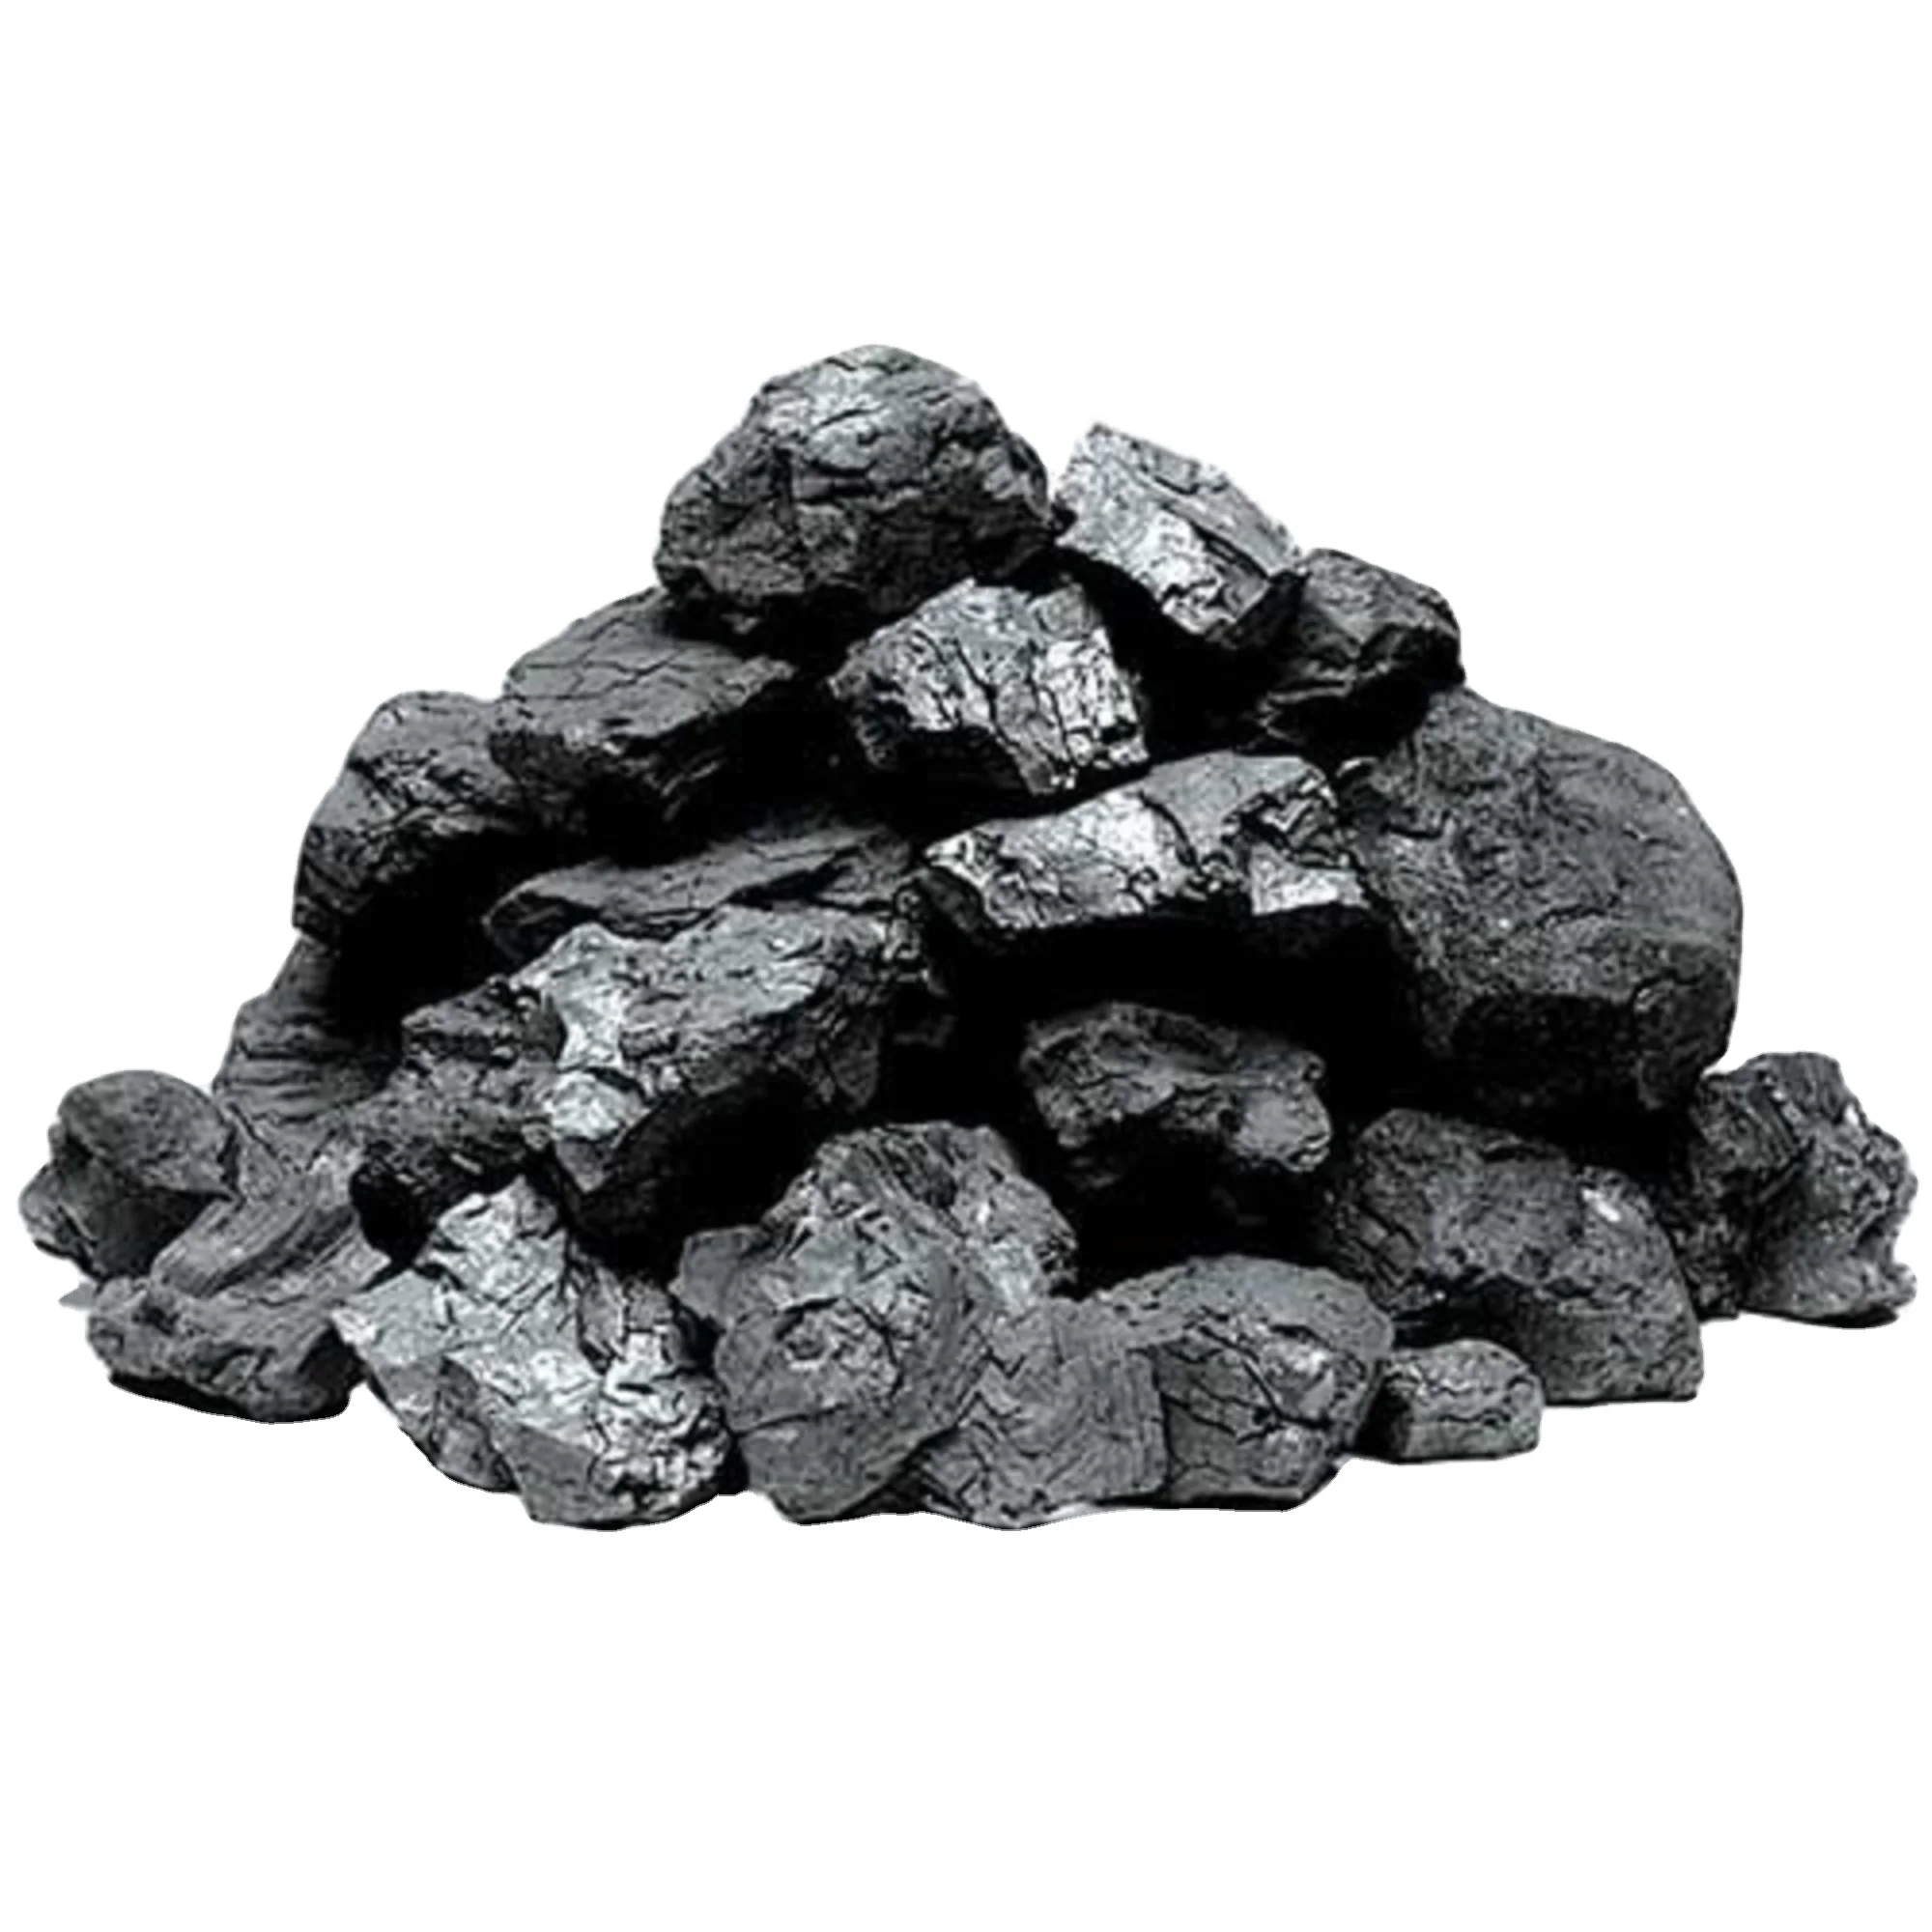 Уголь 2бр. Уголь марки 2бр. Уголь марки 3бр (0-300). Шубарколь уголь. Битуминозный каменный уголь.